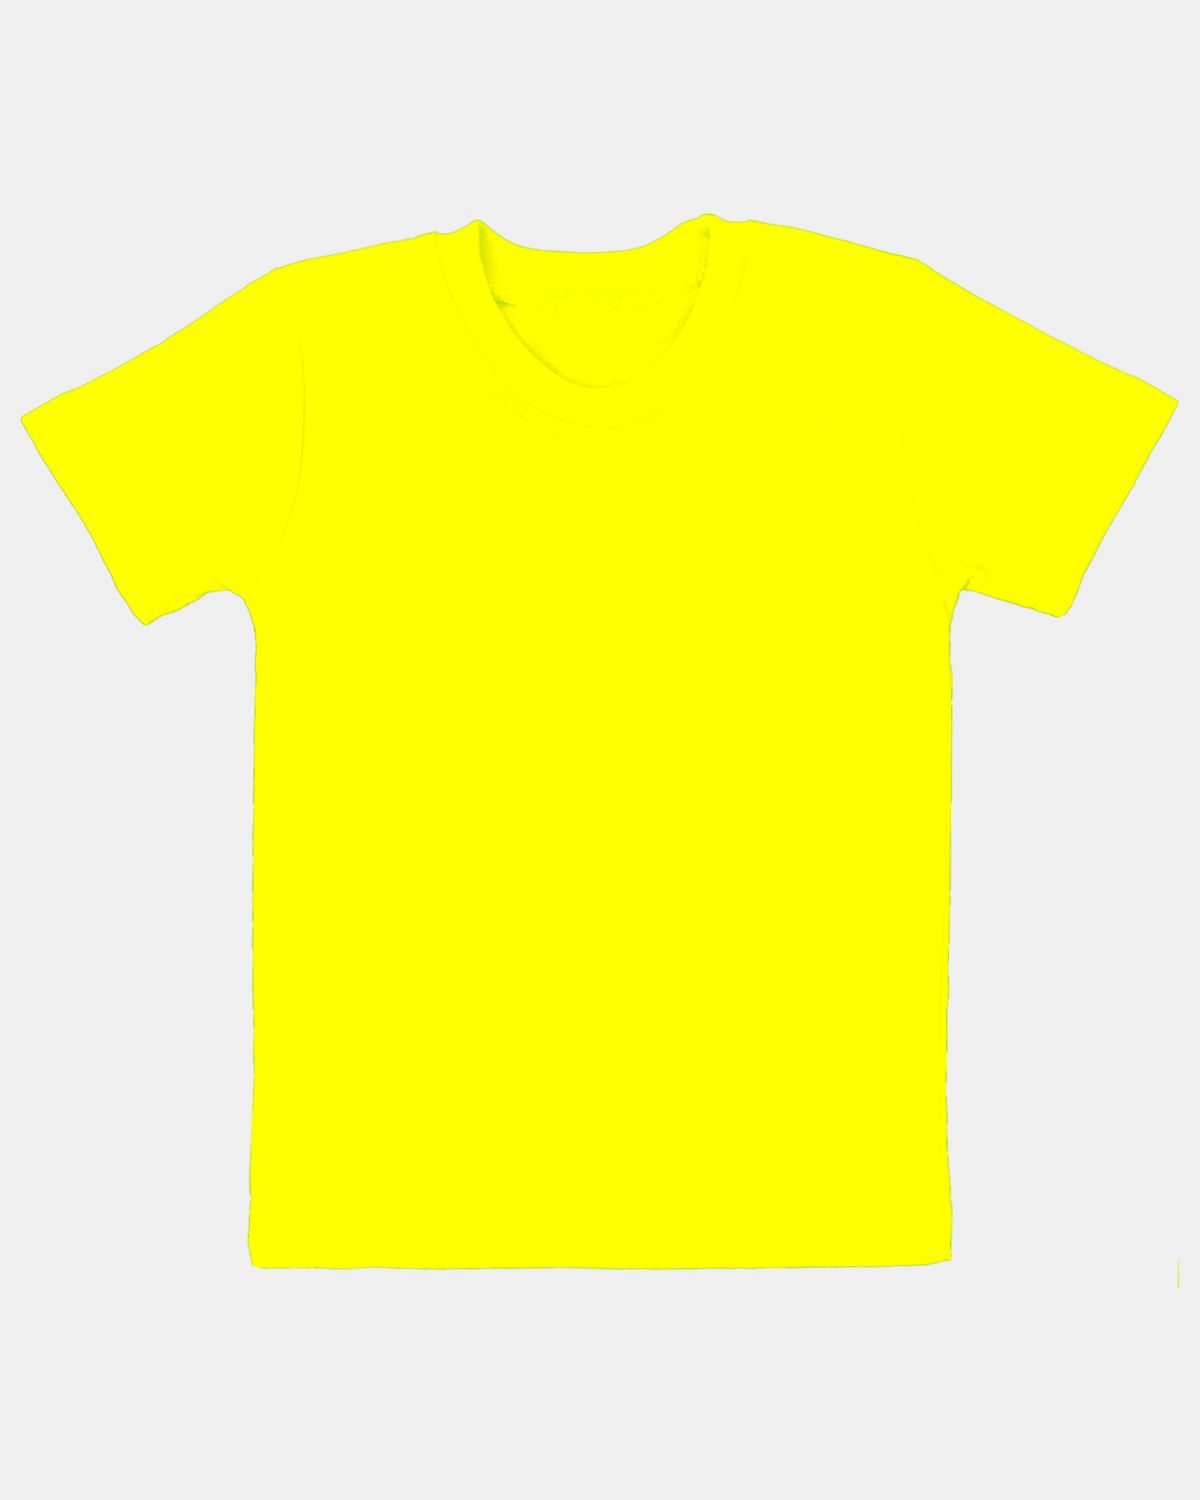 Желтая футболка детская. Ярко желтая футболка. Желтая футболка с принтом. Футболка для девочки желтая. Желтые х б